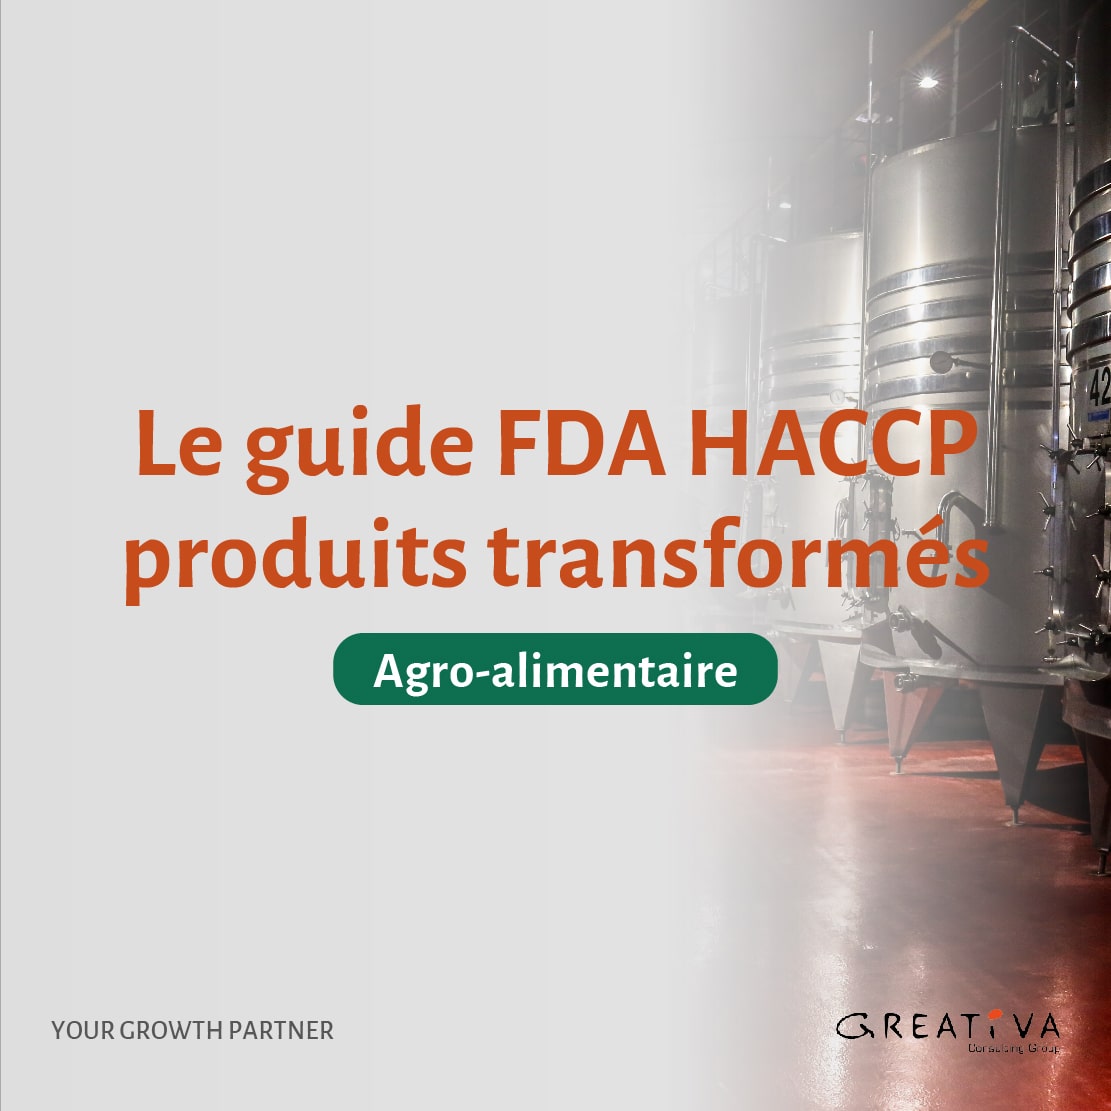 Le guide FDA HACCP produits transformés